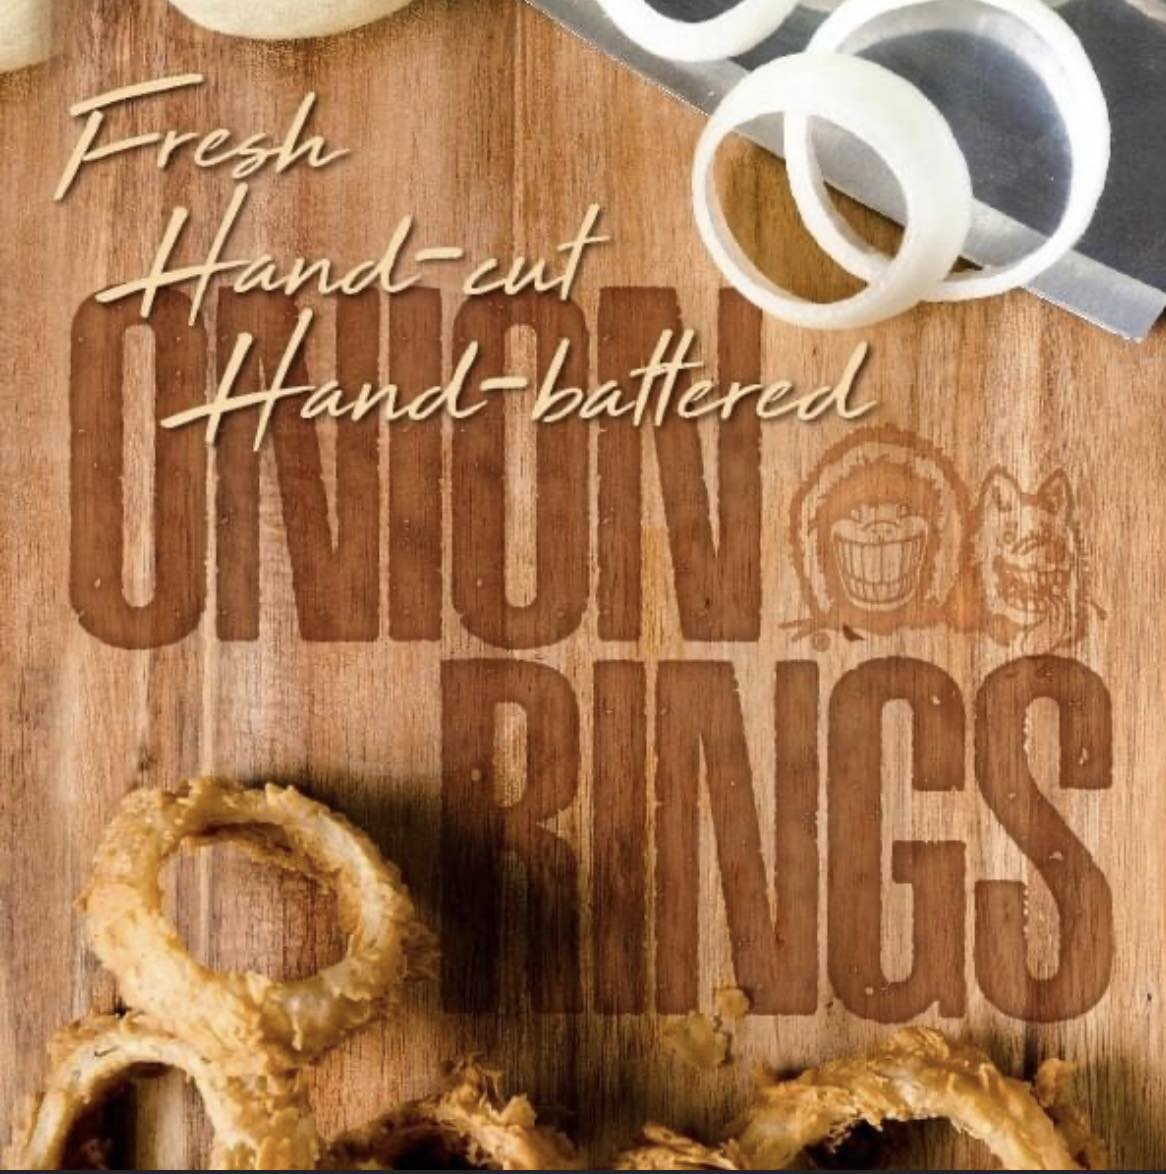 FRESH Onion Rings